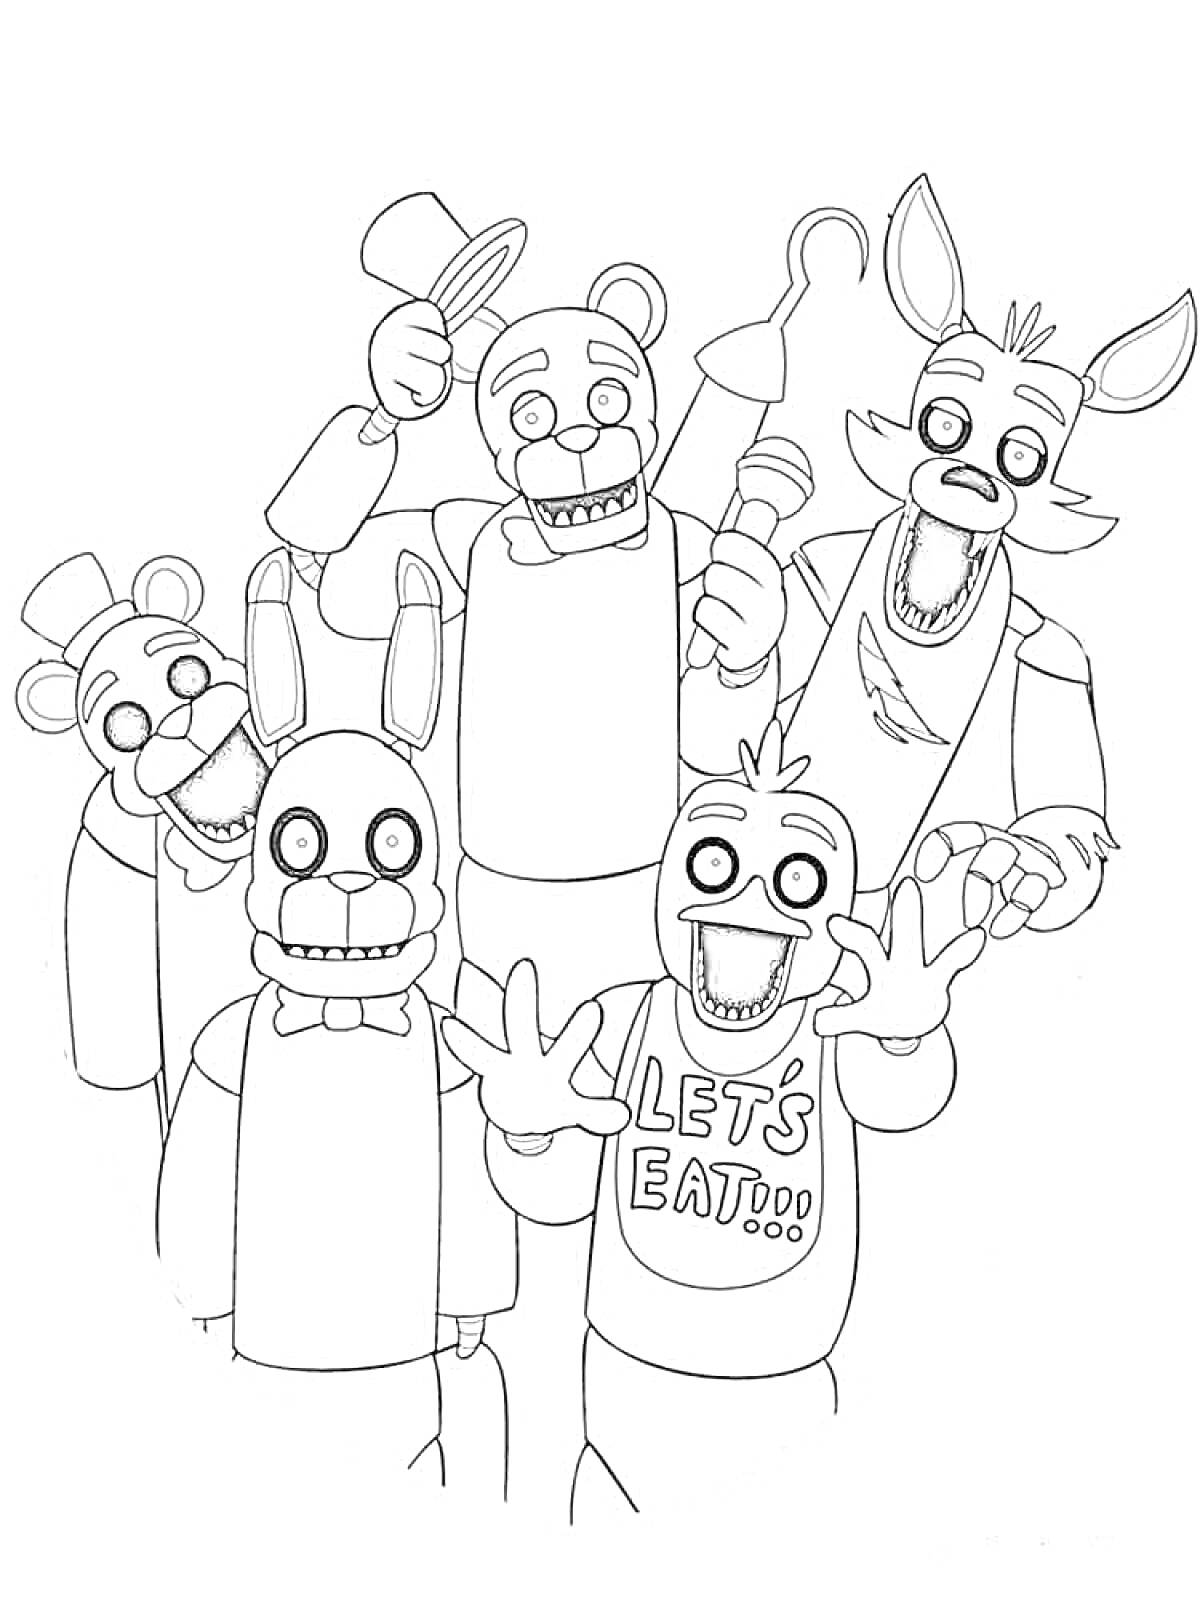 Группа аниматроников: медведь в цилиндре, кролик с ушами, аниматроник с надписью 